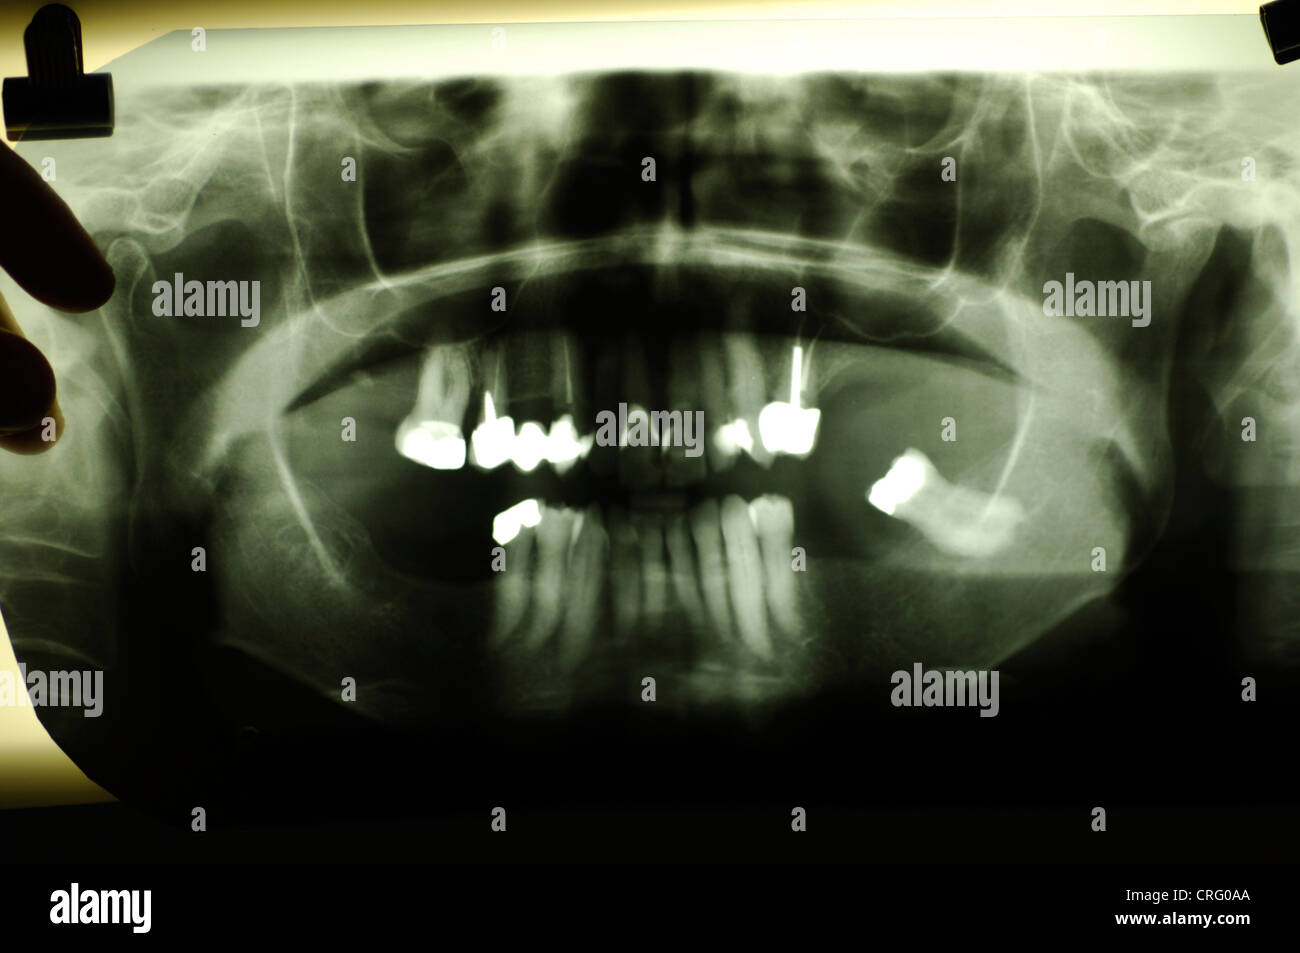 Dental x-ray. Stock Photo